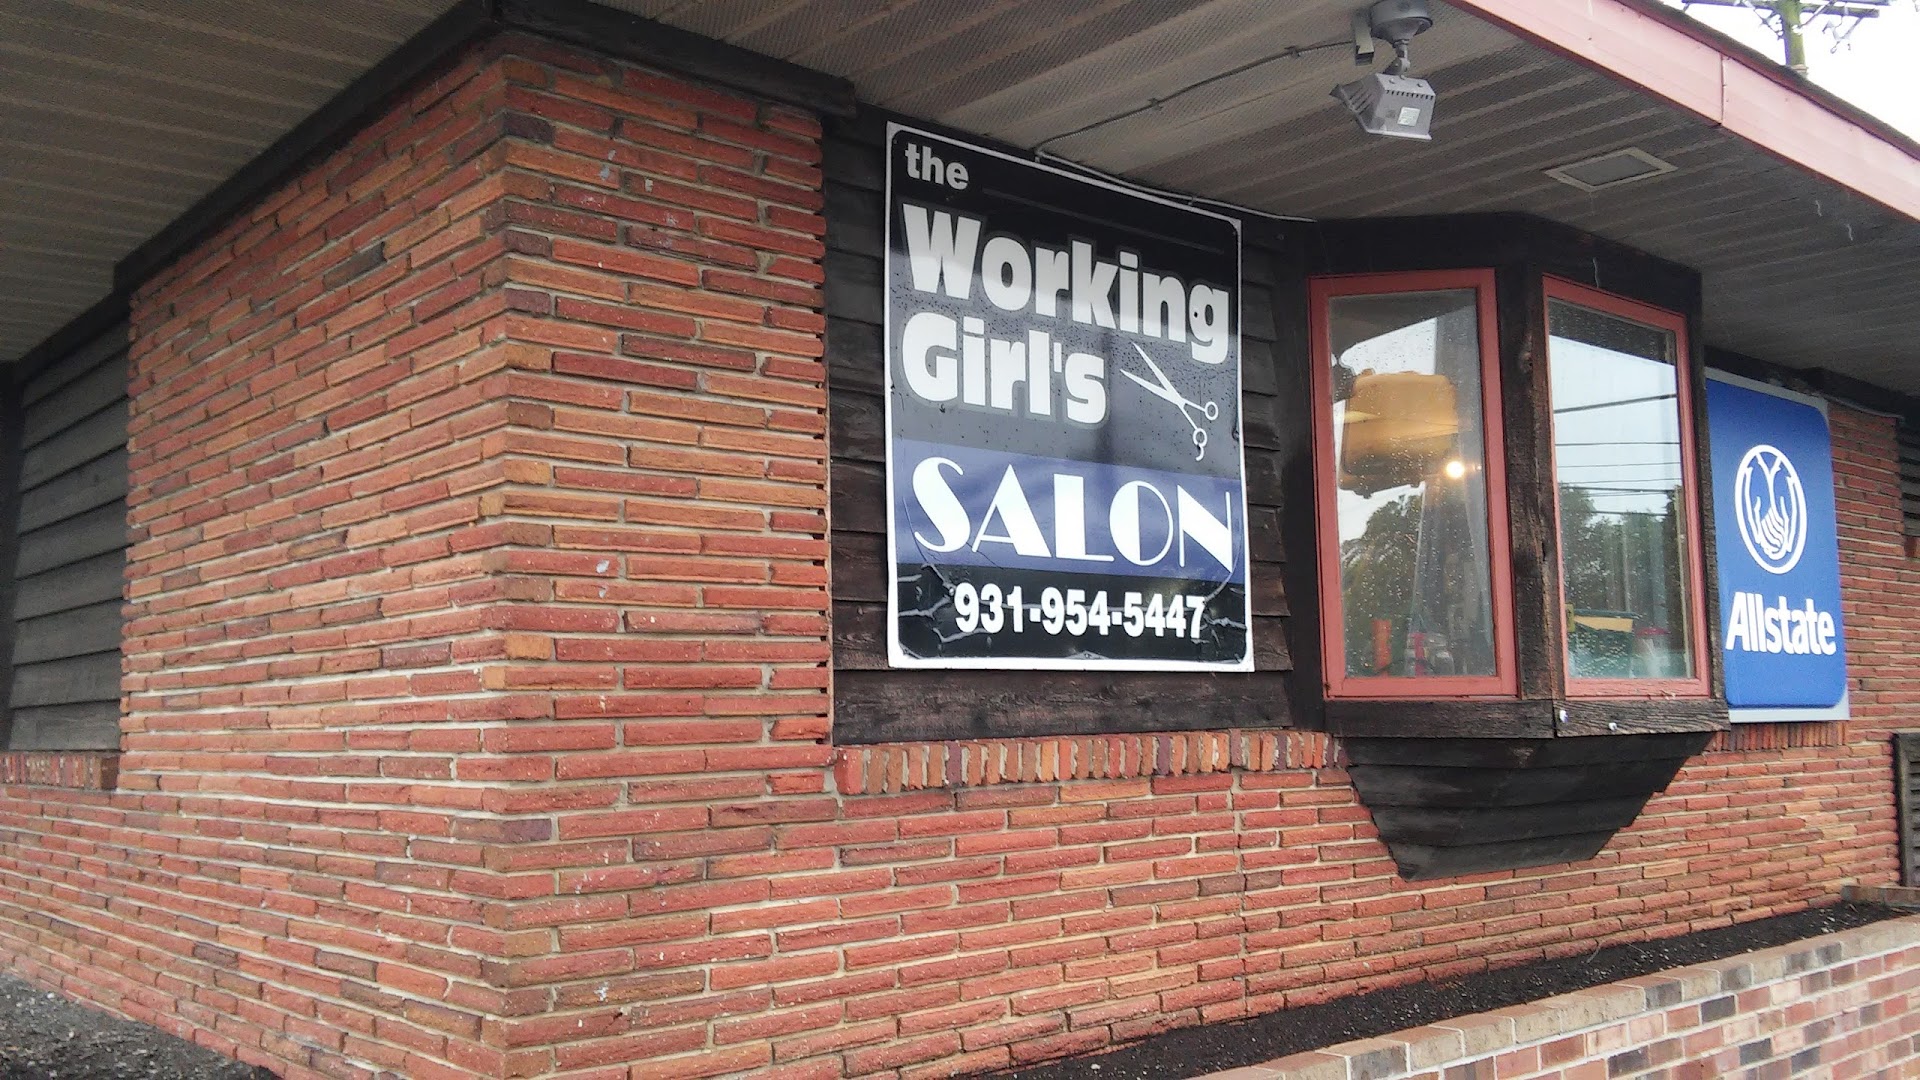 Working Girls Salon